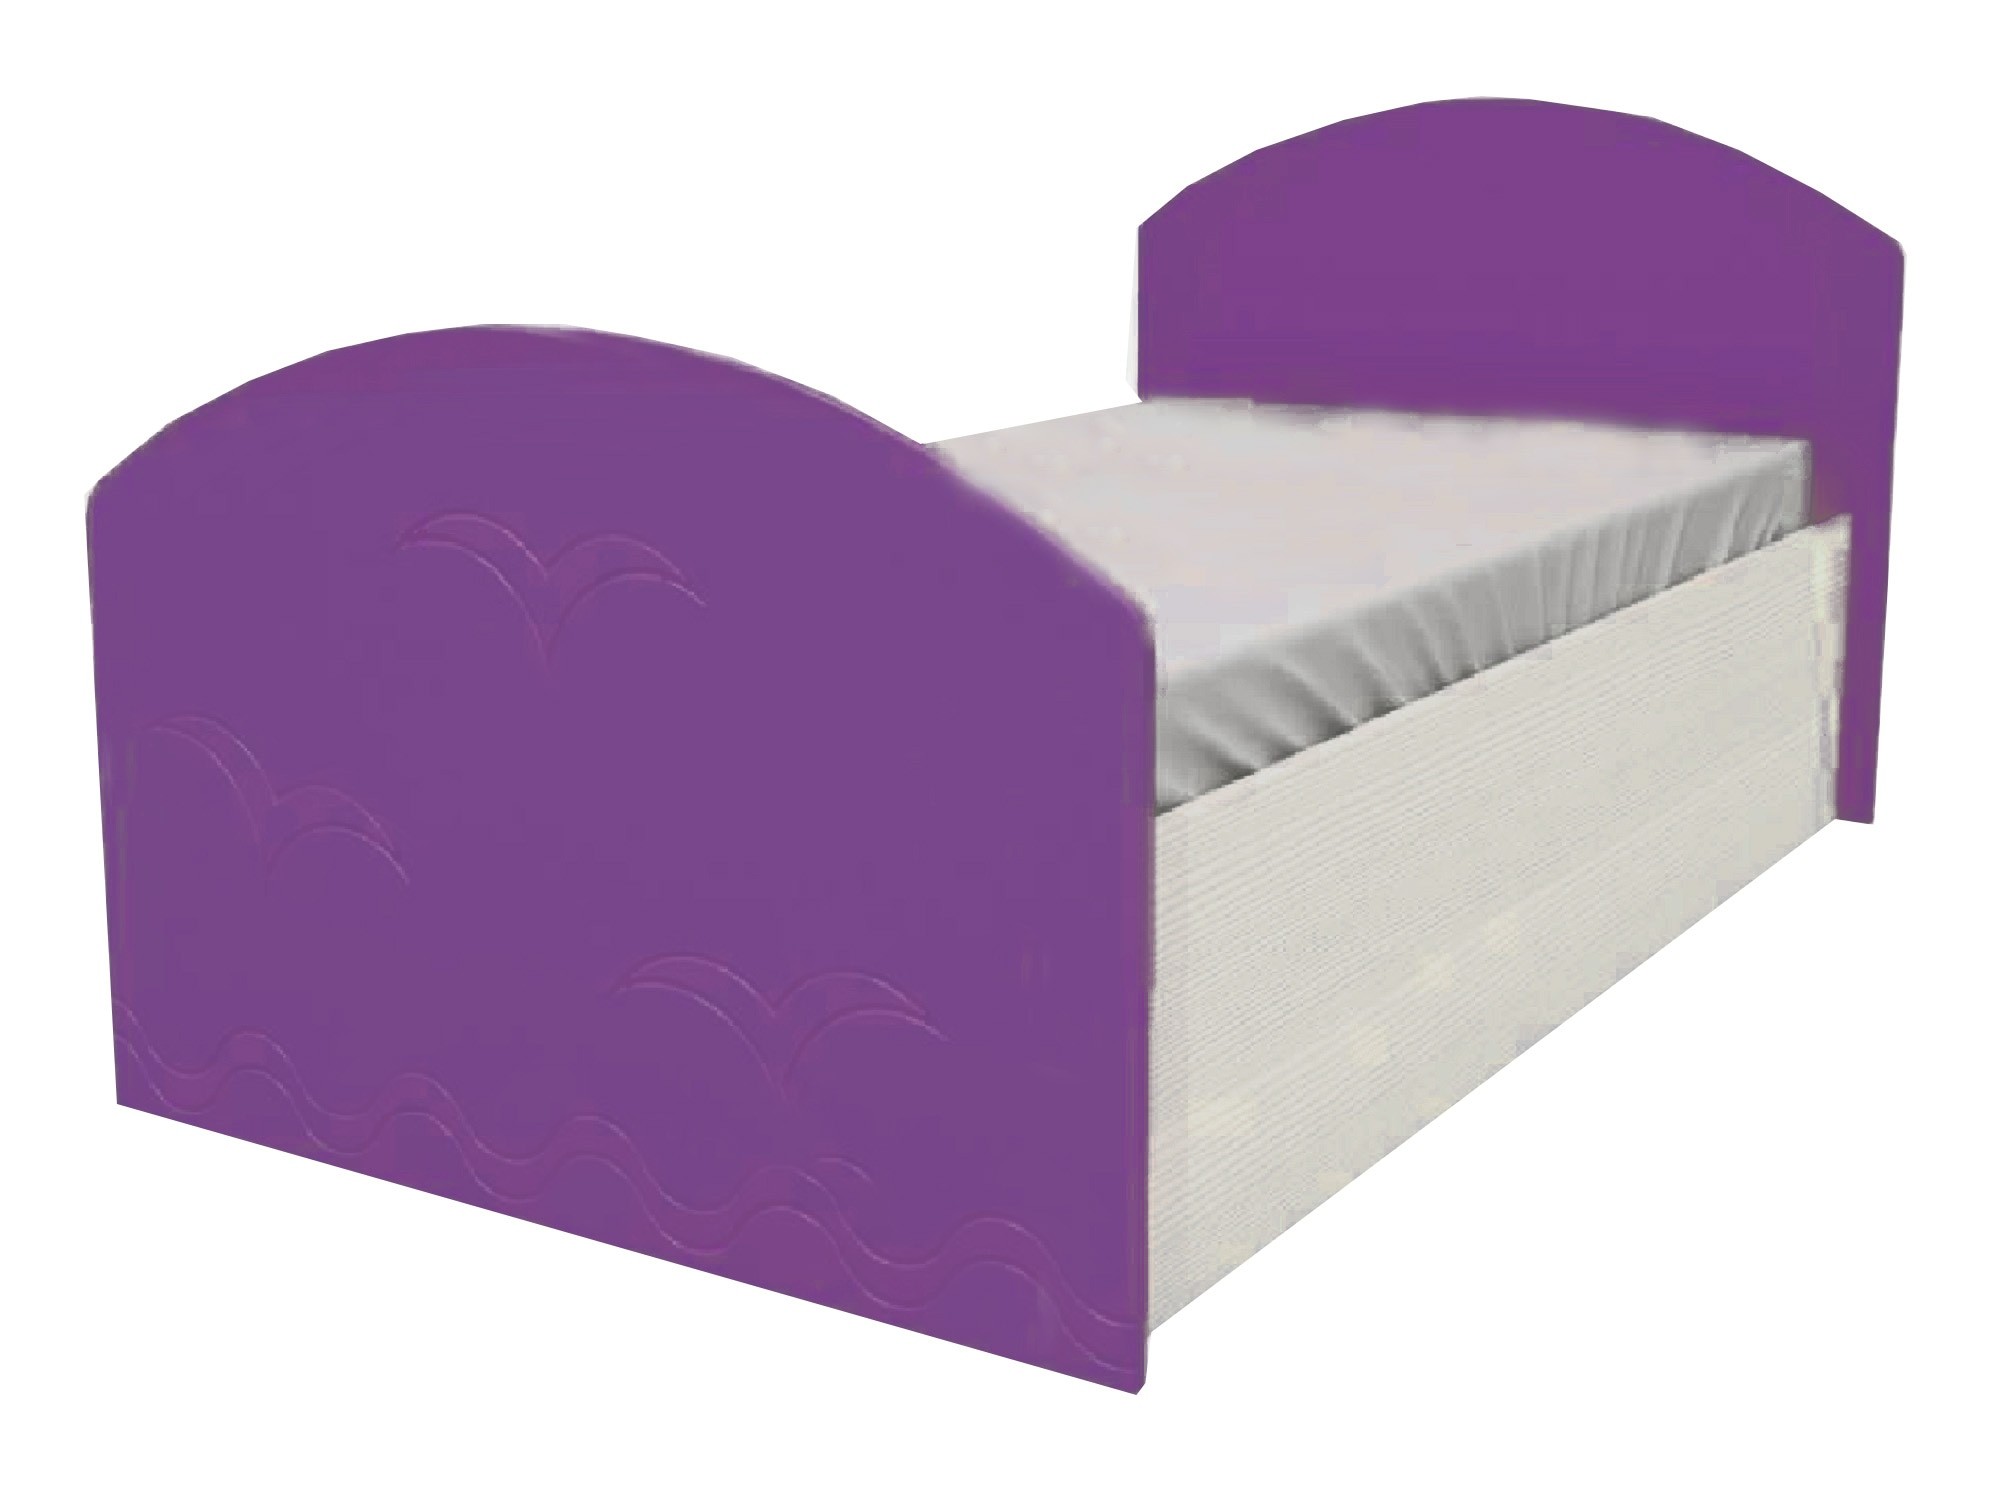 Юниор-2 Детская кровать 80, металлик (Фиолетовый металлик, Дуб белёный) Фиолетовый металлик, МДФ, ЛДСП юниор 2 детская кровать 80 металлик фиолетовый металлик дуб белёный дуб белёный мдф лдсп